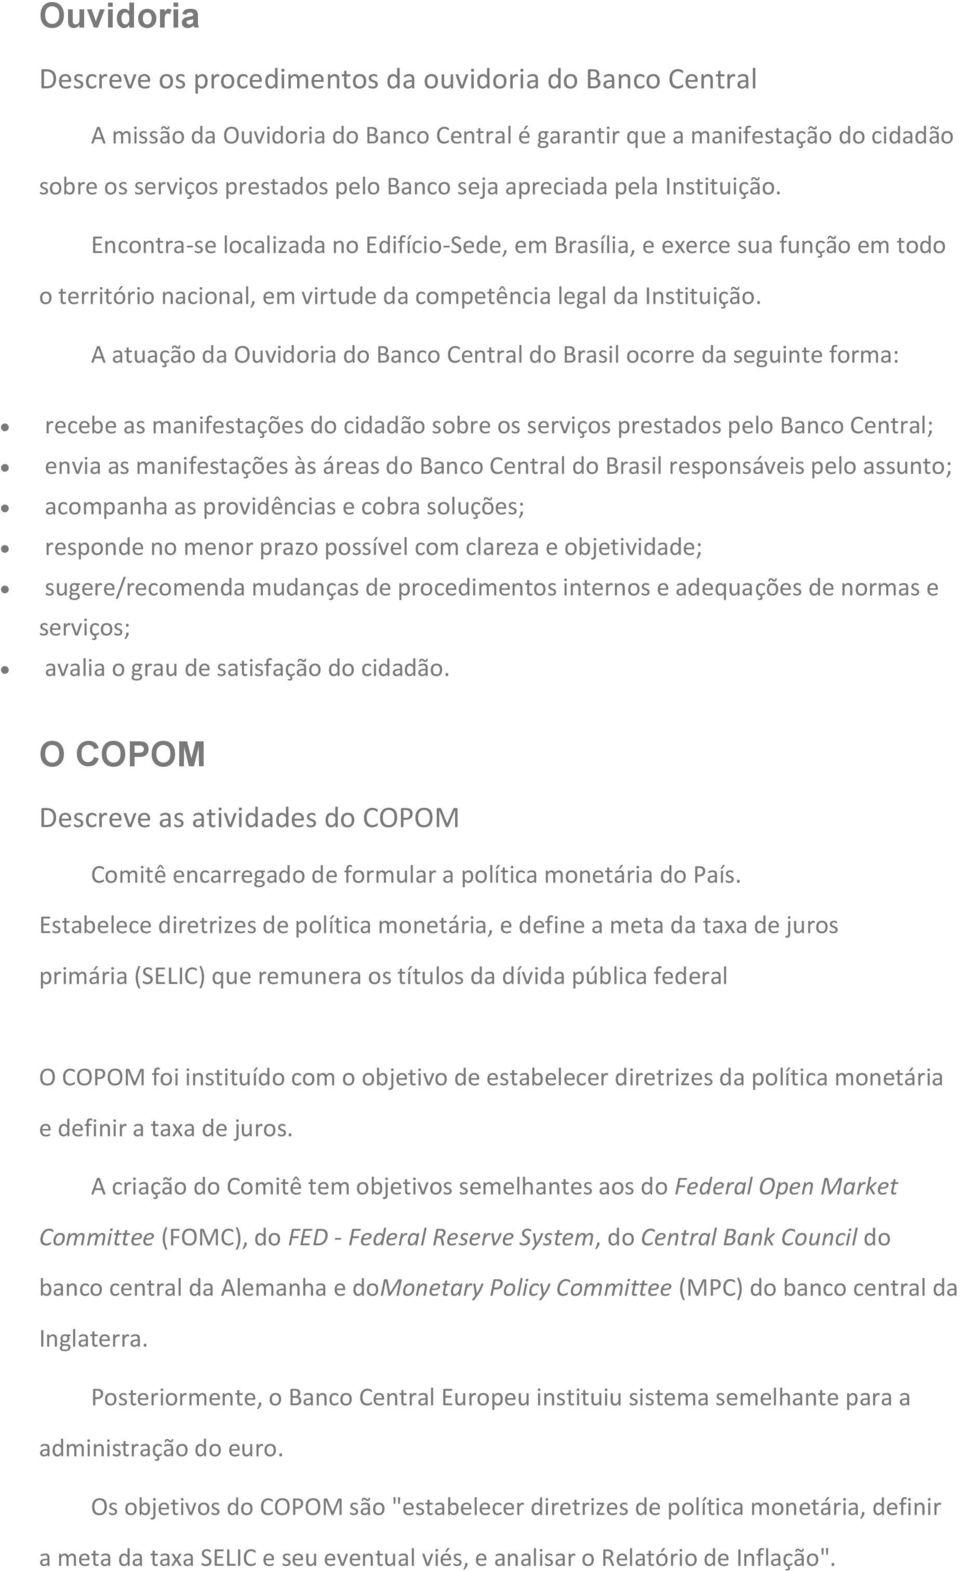 A atuação da Ouvidoria do Banco Central do Brasil ocorre da seguinte forma: recebe as manifestações do cidadão sobre os serviços prestados pelo Banco Central; envia as manifestações às áreas do Banco